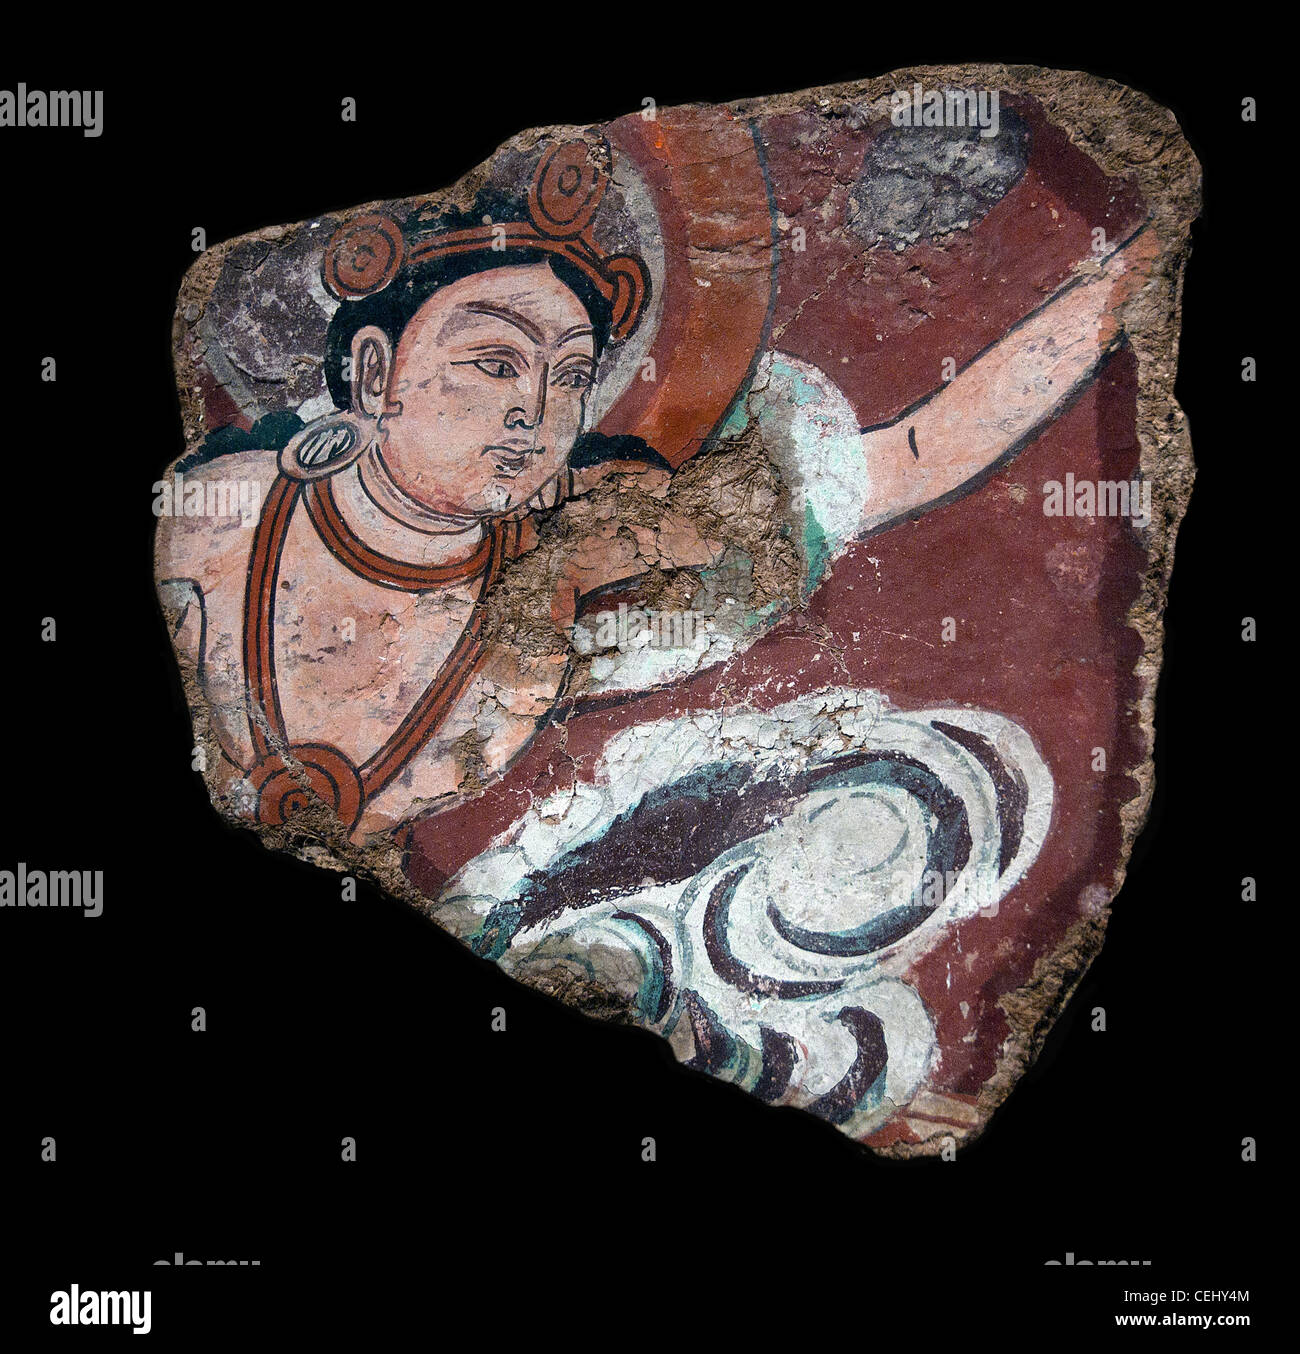 Fresque Bouddha 8 siècle de la dynastie Tang en Chine Xinjiang aqur Qumtura Duldur sanctuaire Banque D'Images